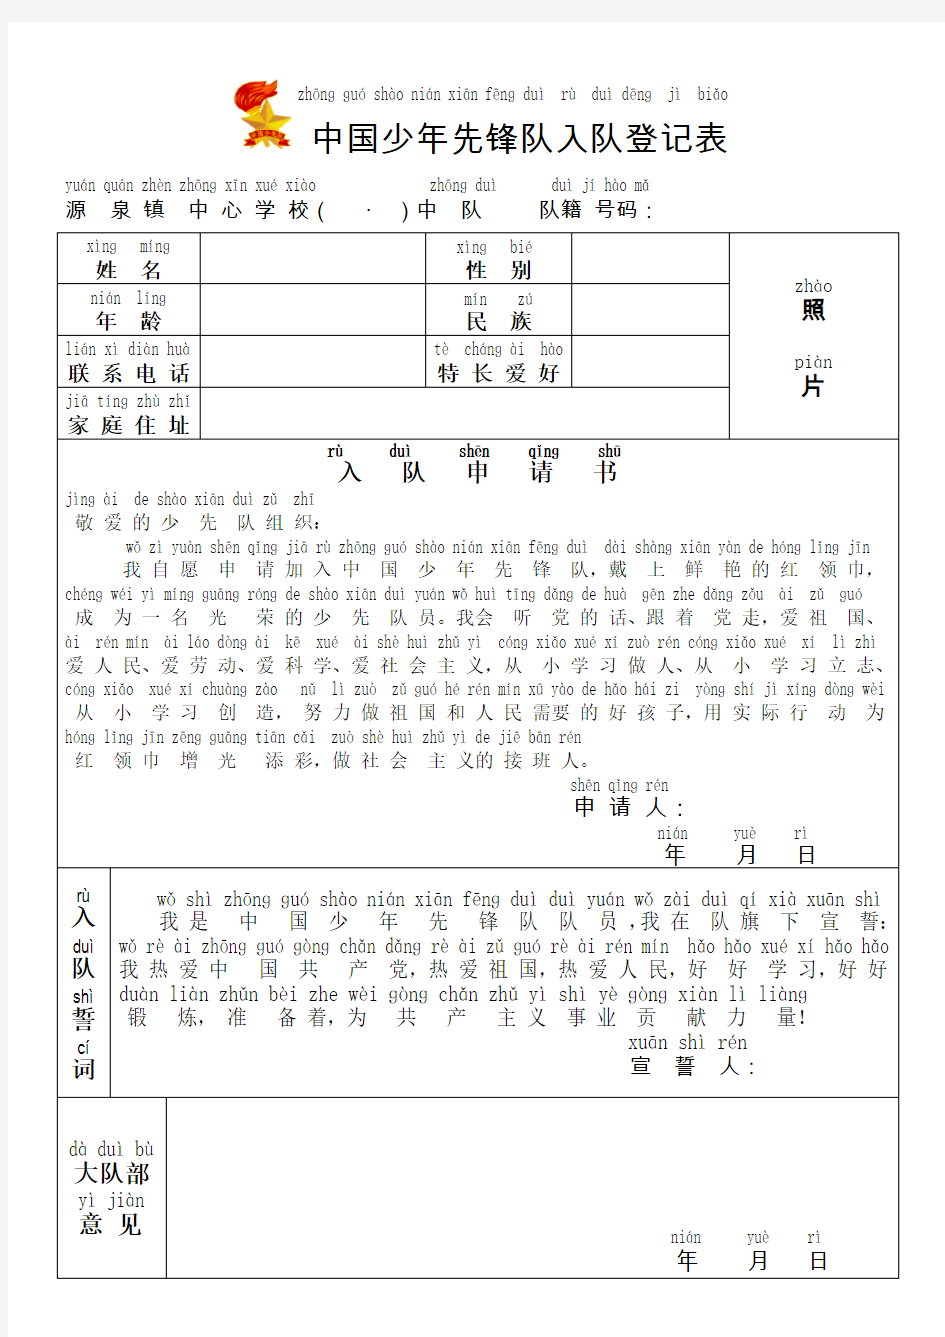 (拼音版)中国少年先锋队入队登记表